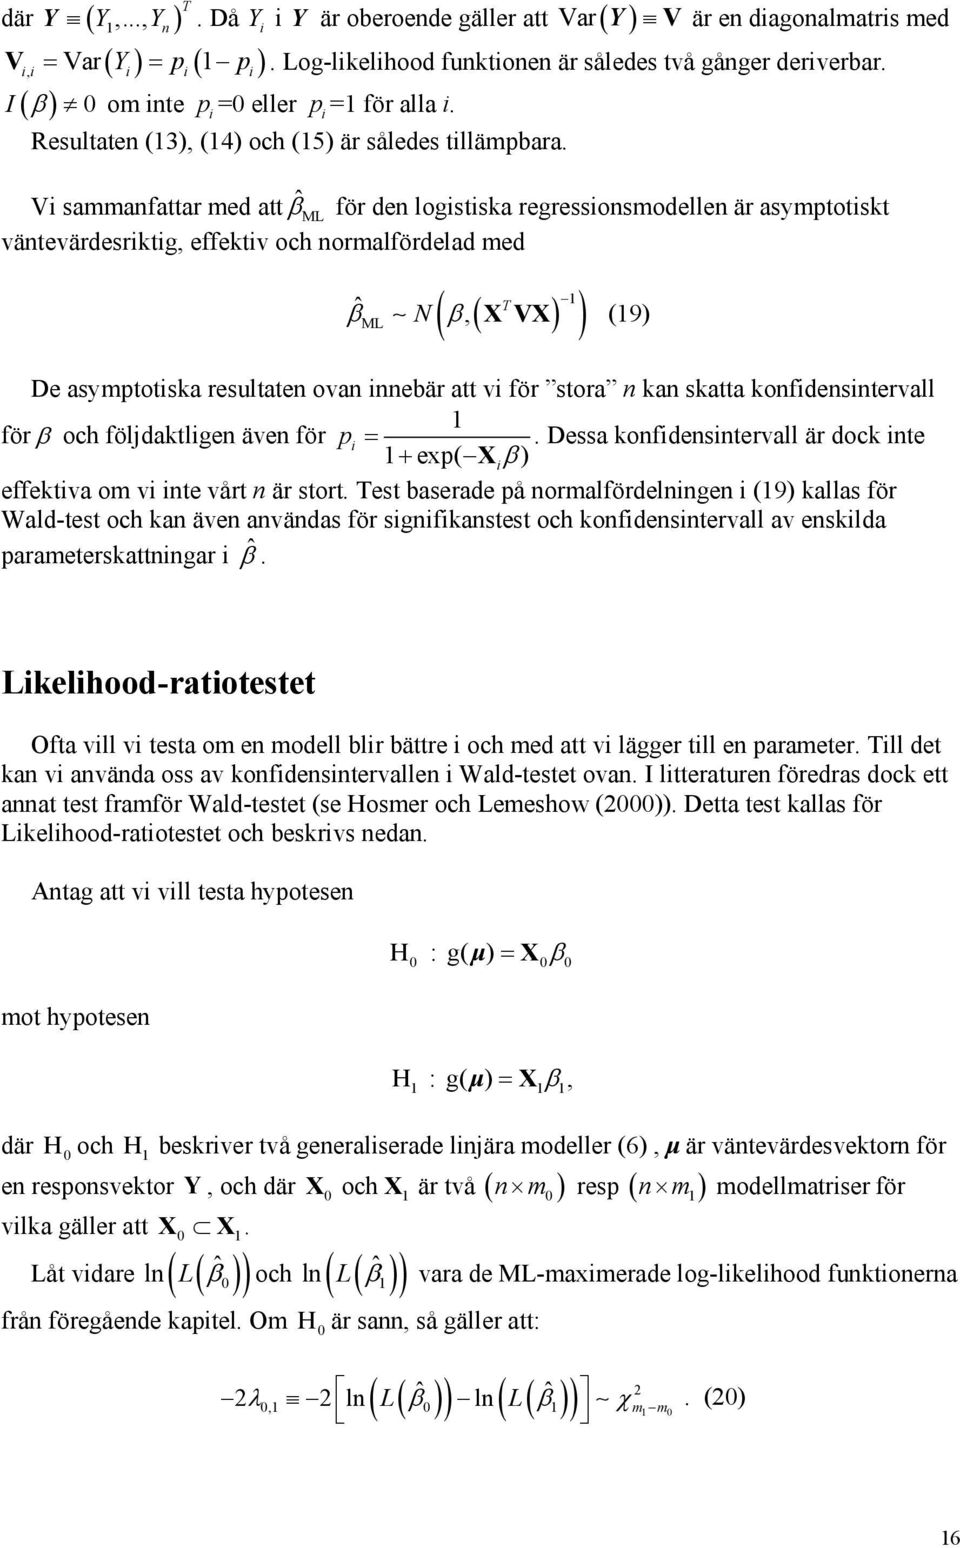 V sammanfattar med att ML ˆβ för den logstska regressonsmodellen är asymptotskt väntevärdesrktg, effektv och normalfördelad med ( ) ˆβ ( T ) ML N β, X VX (9) De asymptotska resultaten ovan nnebär att